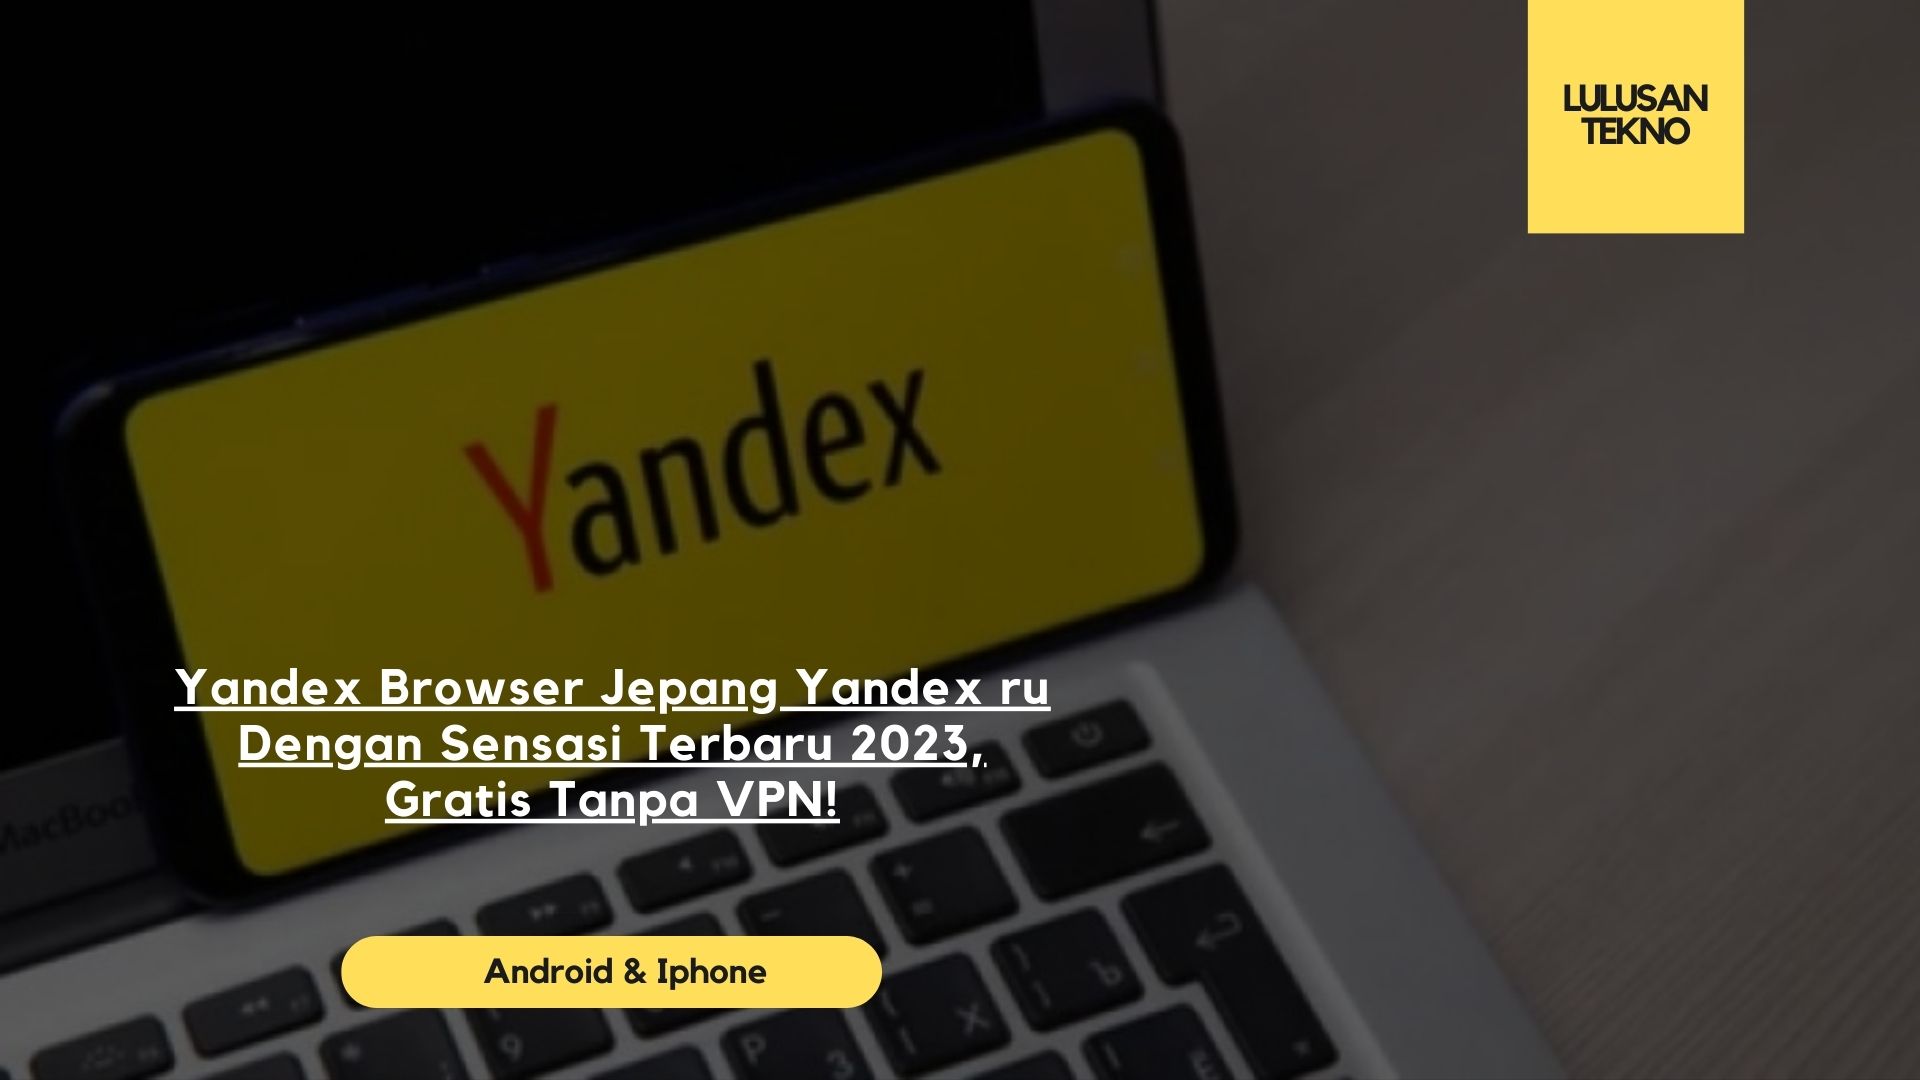 Yandex Browser Jepang Yandex ru Dengan Sensasi Terbaru 2023, Gratis Tanpa VPN!